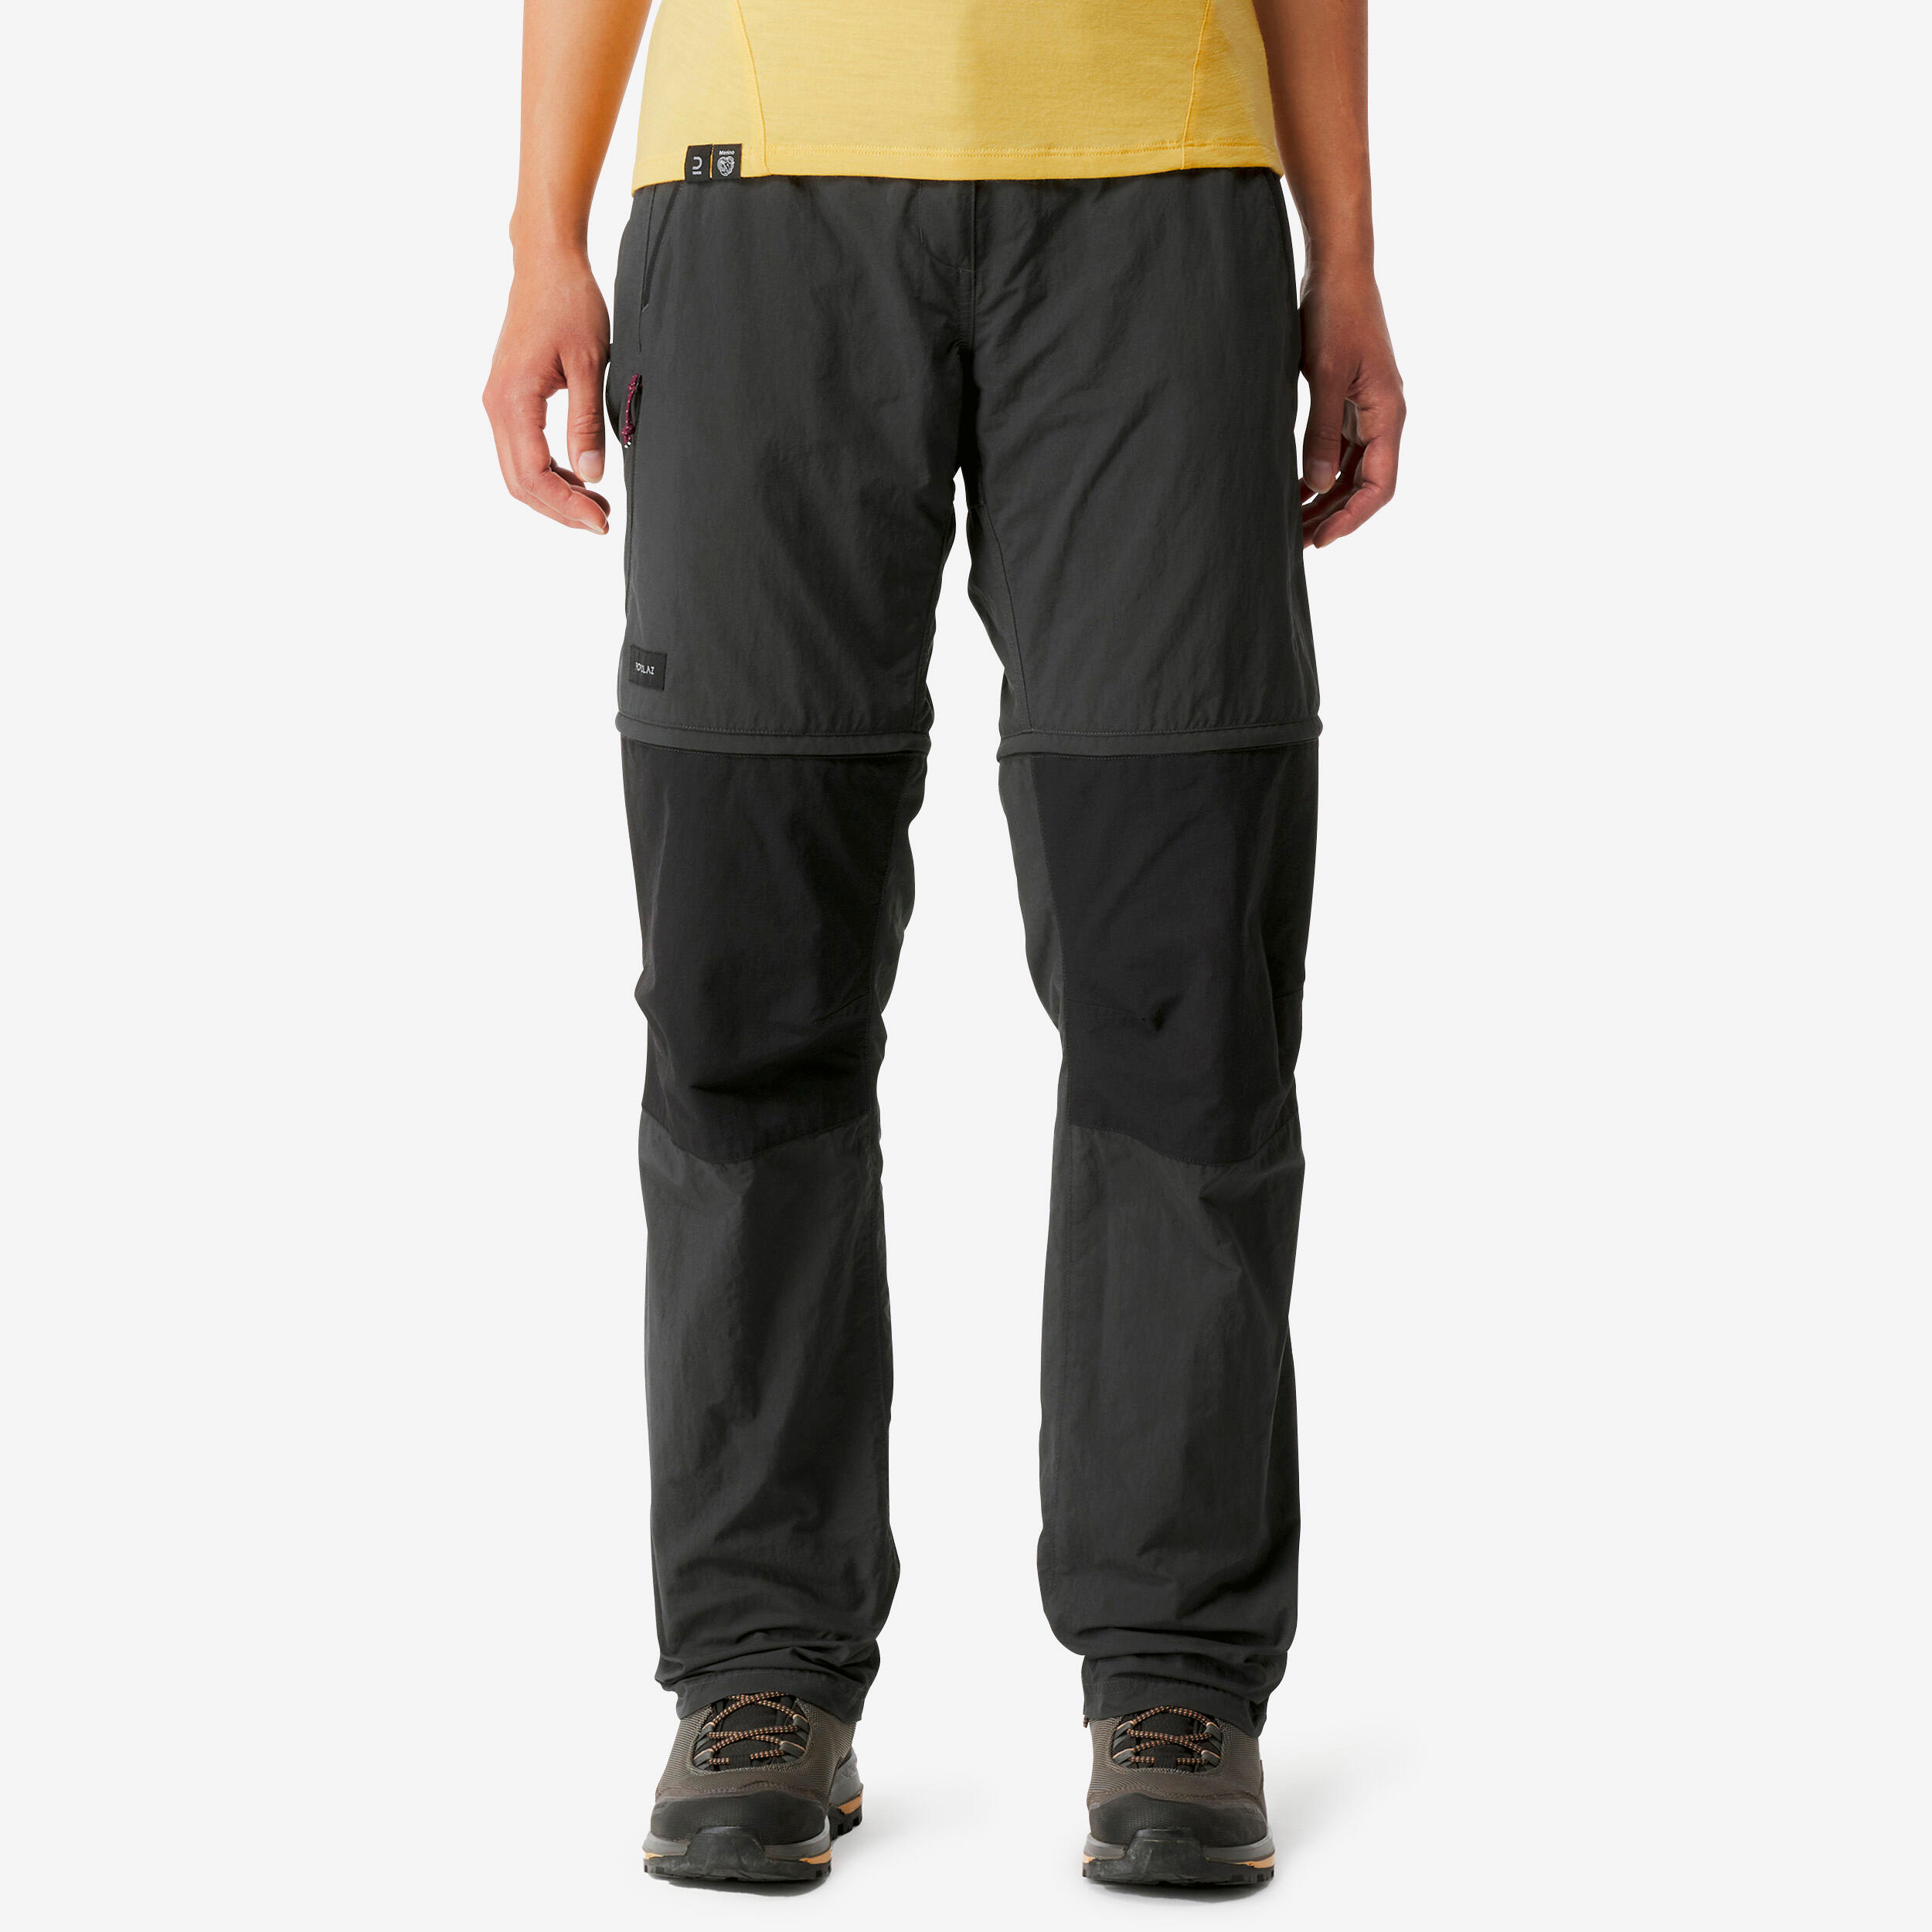 BC CLOTHING | Pants | Bc Clothing Mens Convertible Stretch Cargo Hiking  Pants Shorts Navy | Poshmark